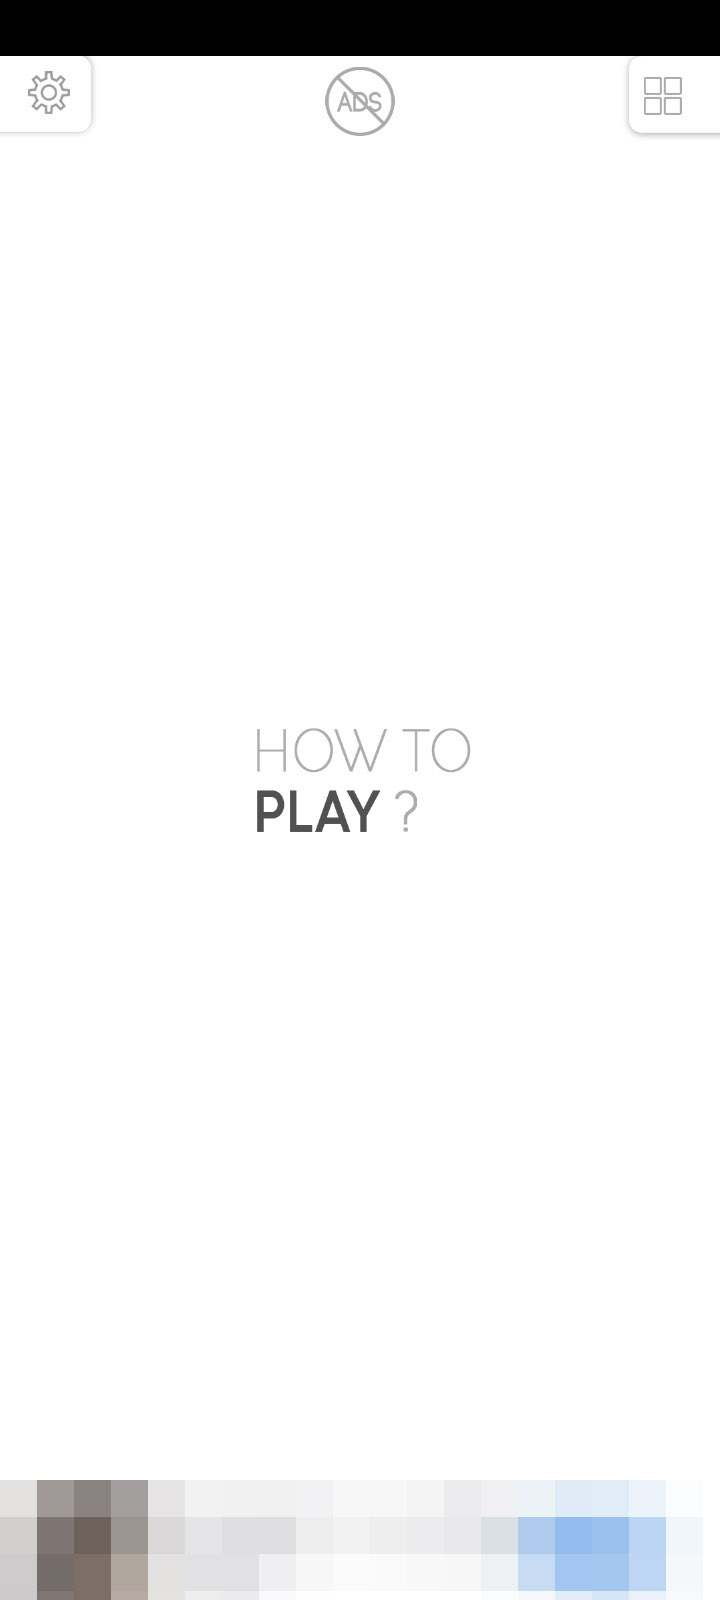 答えを推測してアクションを起こそう Androidアプリ How To Play パズルゲーム を紹介する ほぼ 日刊スマホゲーム通信 第2522回